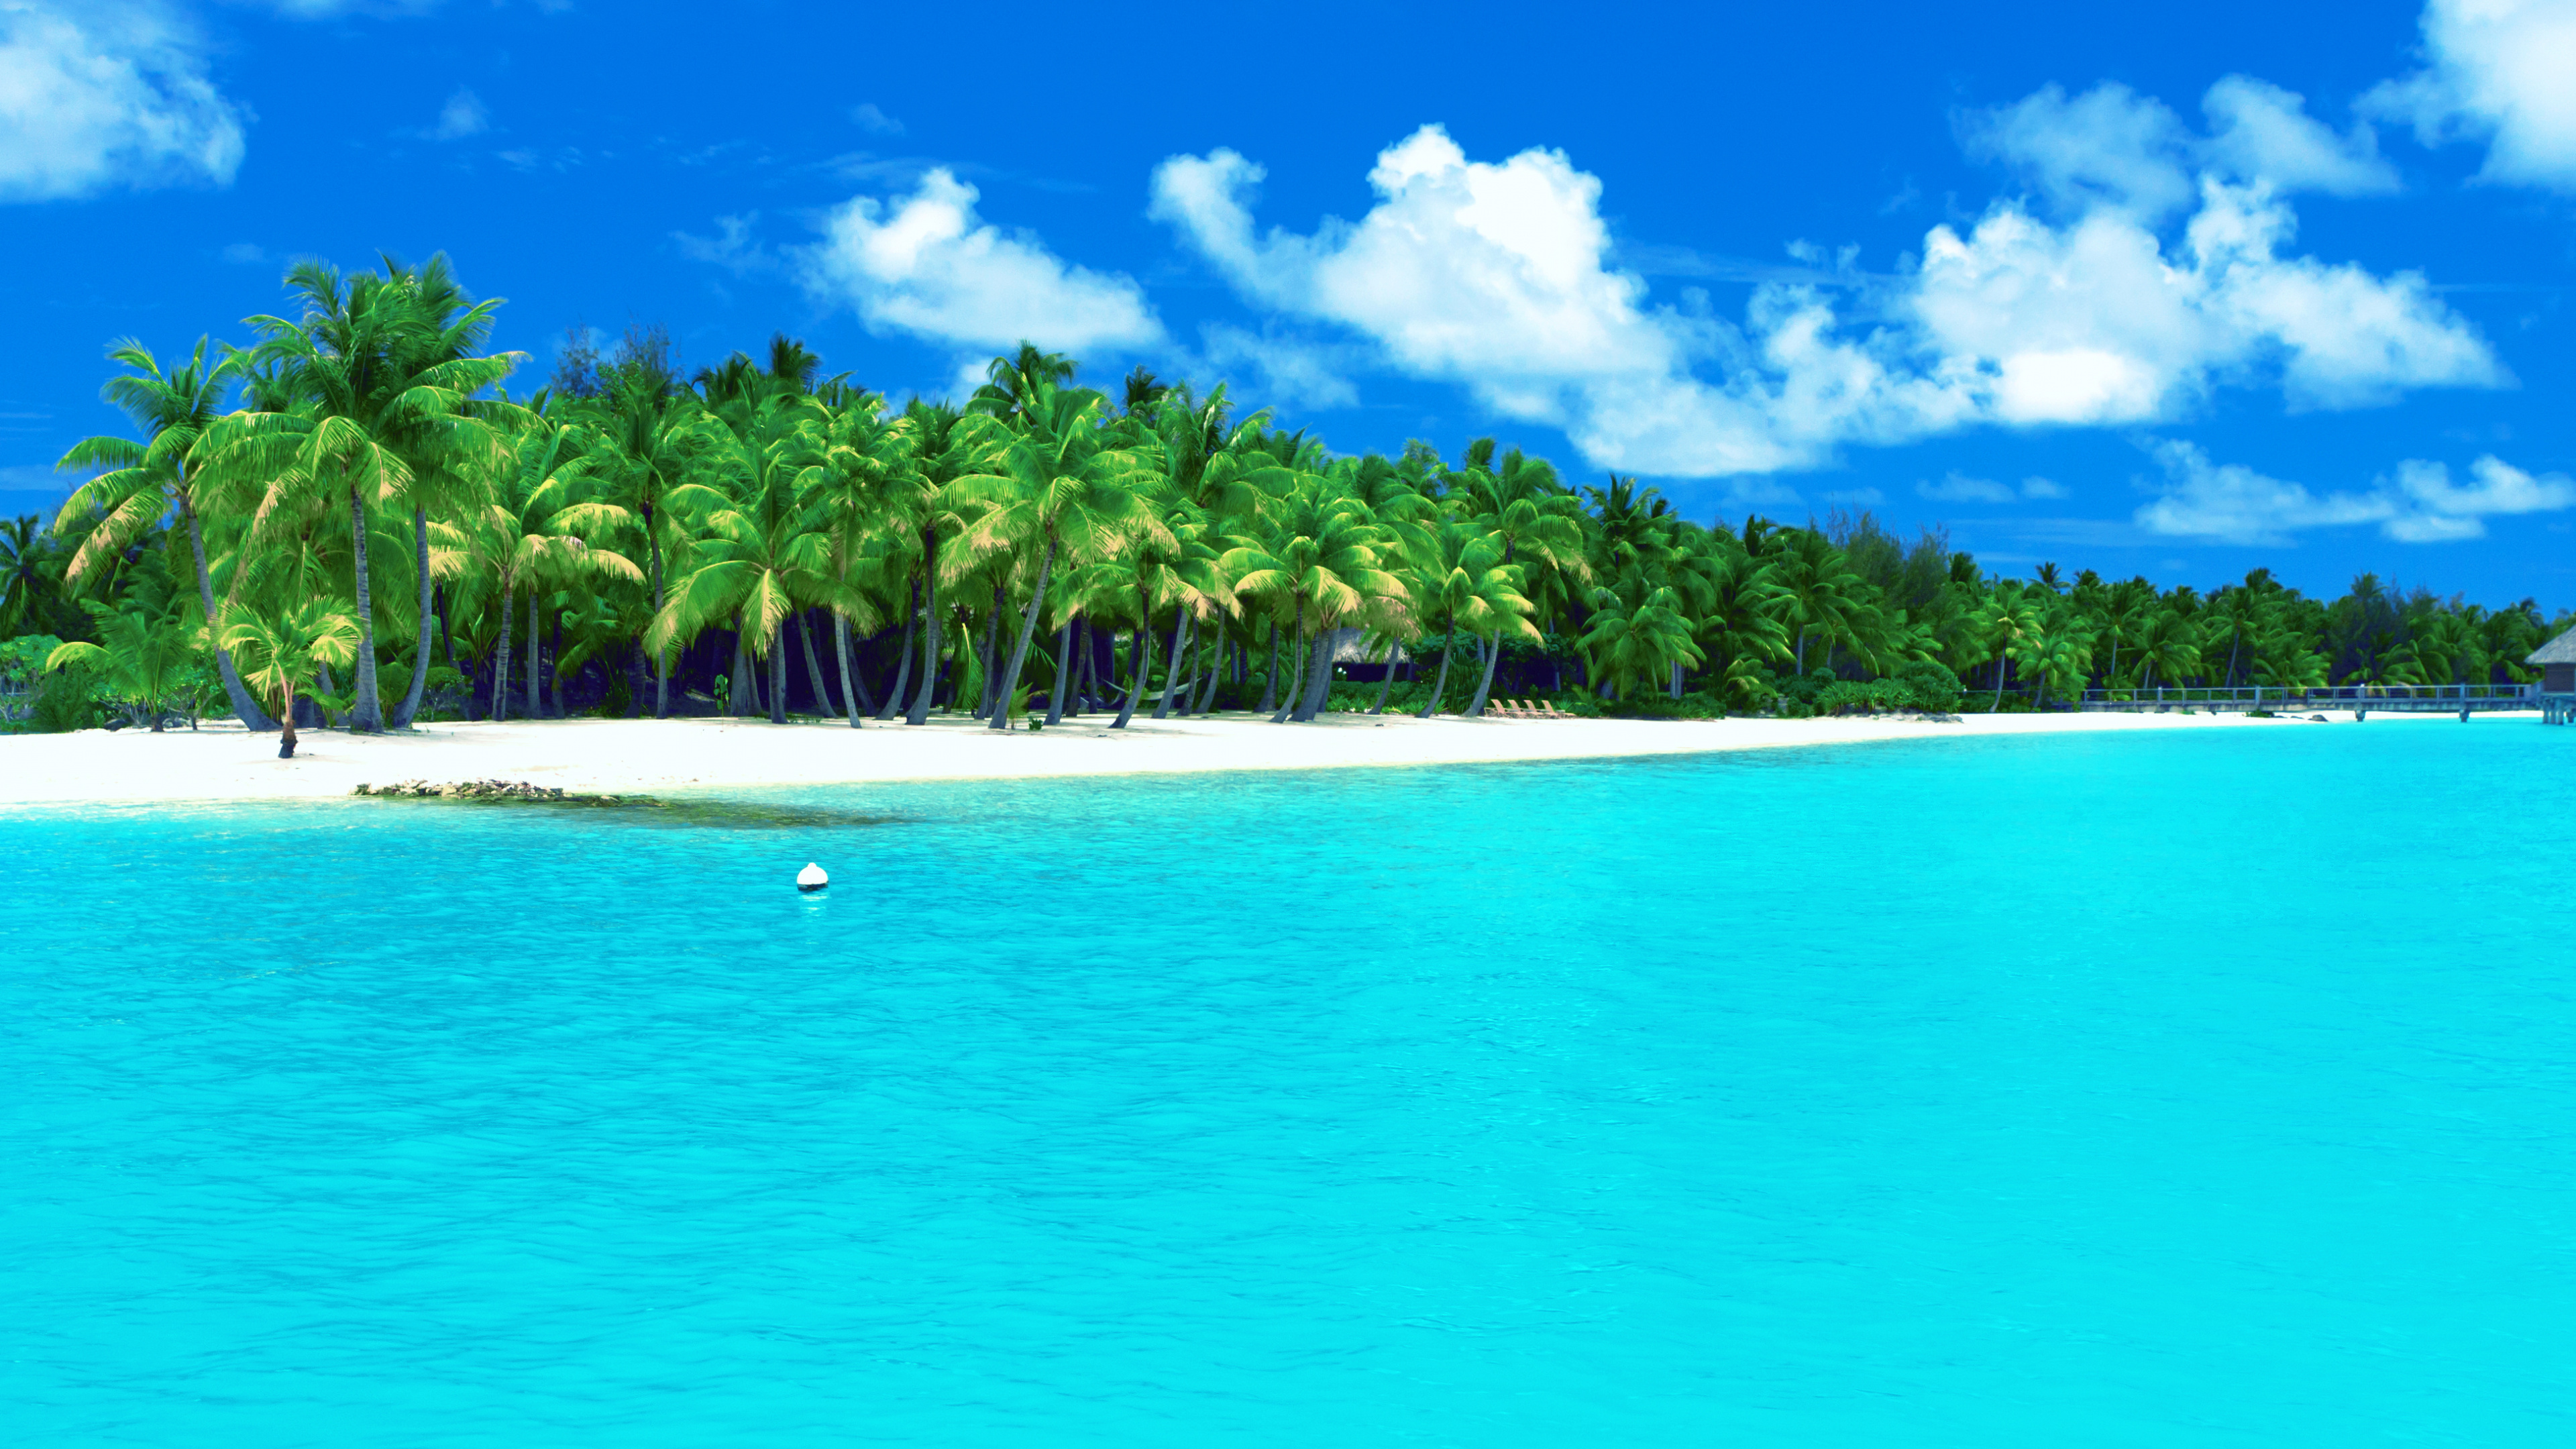 夏天, 热带地区, 大海, 加勒比, 沿海和海洋地貌 壁纸 3840x2160 允许